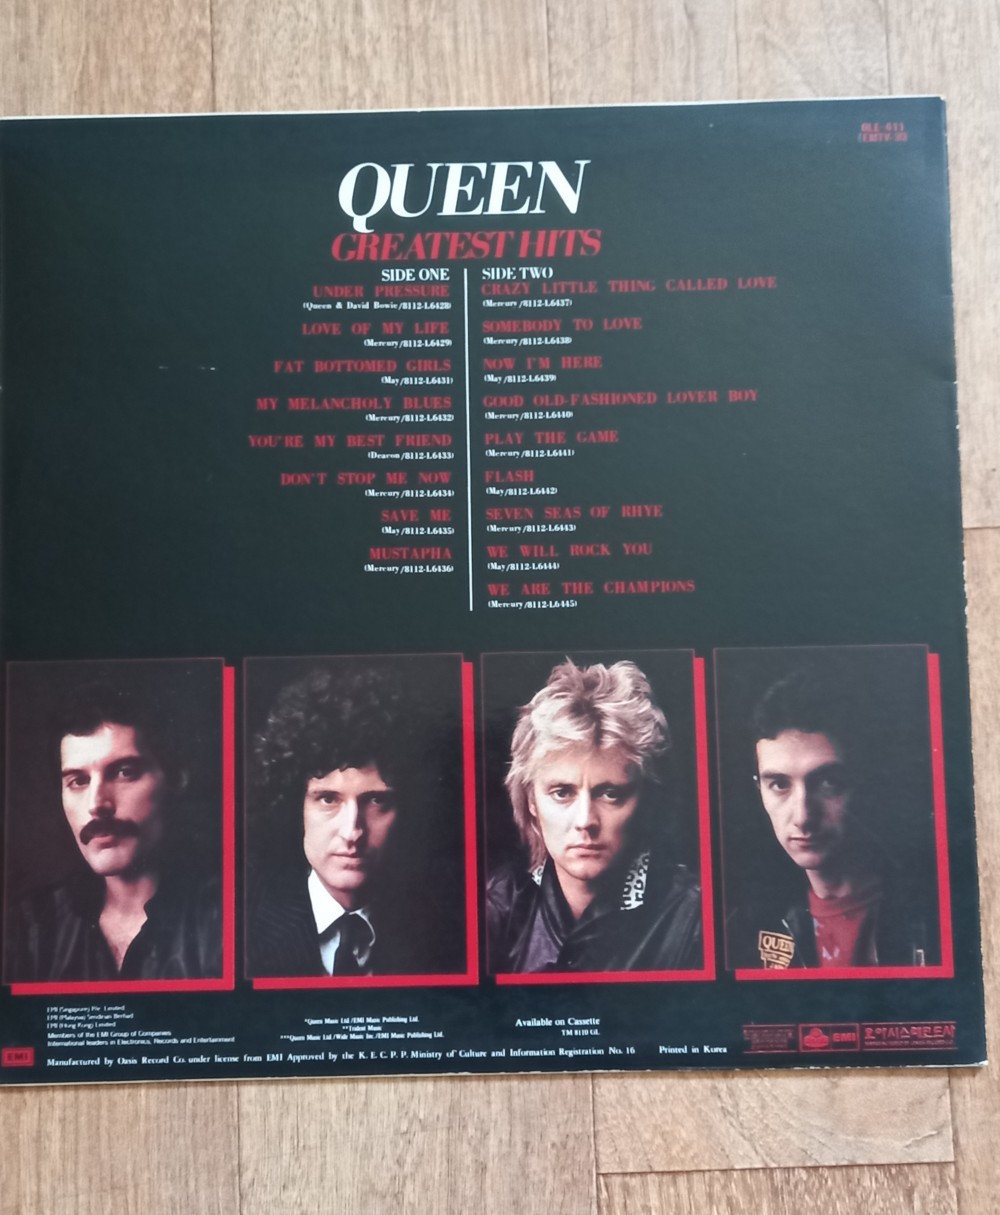 Queen - Greatest Hits I (2 LP) - Vinyl